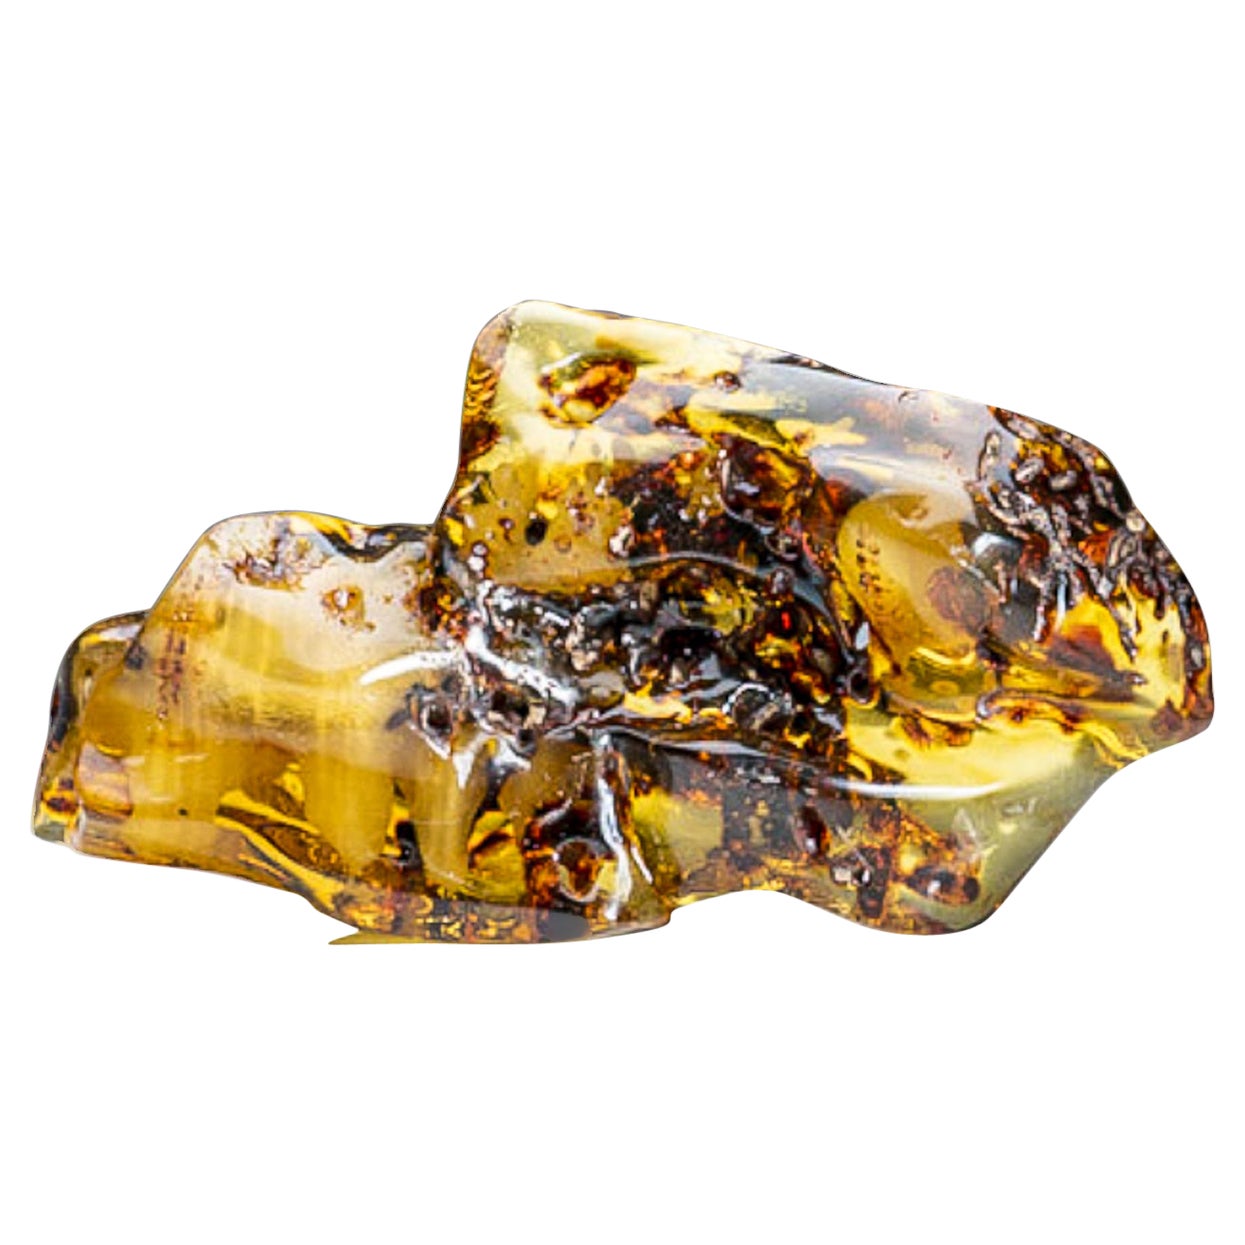 Véritable ambre copal de Colombie de qualité gemme (362,8 grammes)